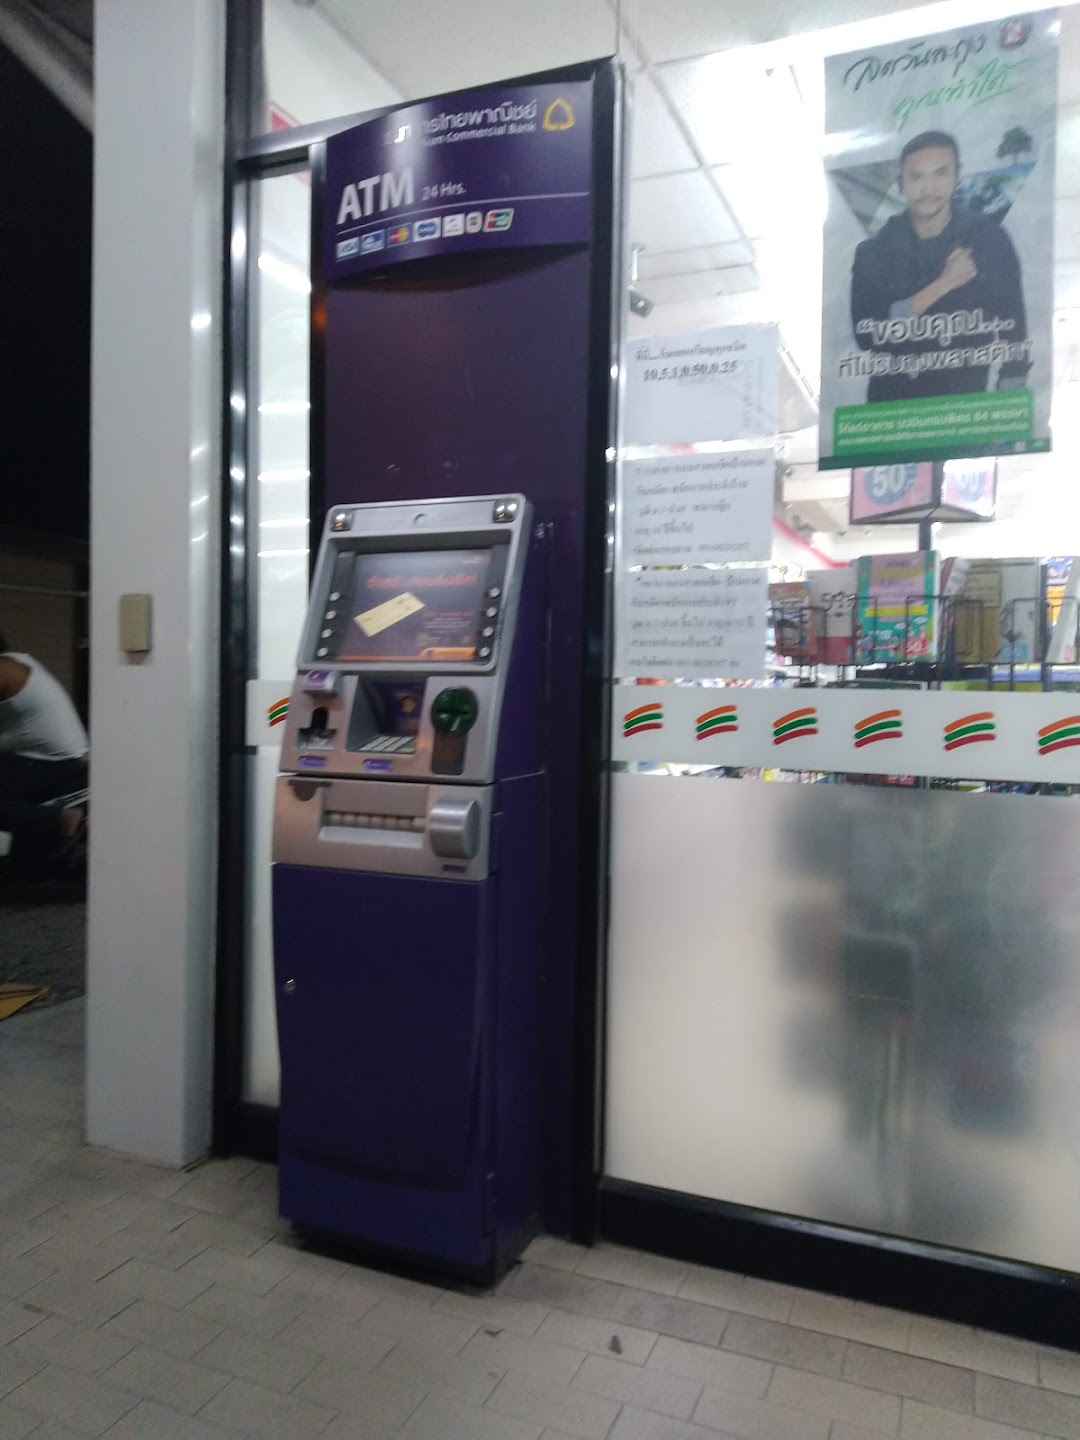 ATM ธนาคารไทยพาณิชย์ 7-11 ถ.สายเอเชีย-บ้านกรด อยุธยา